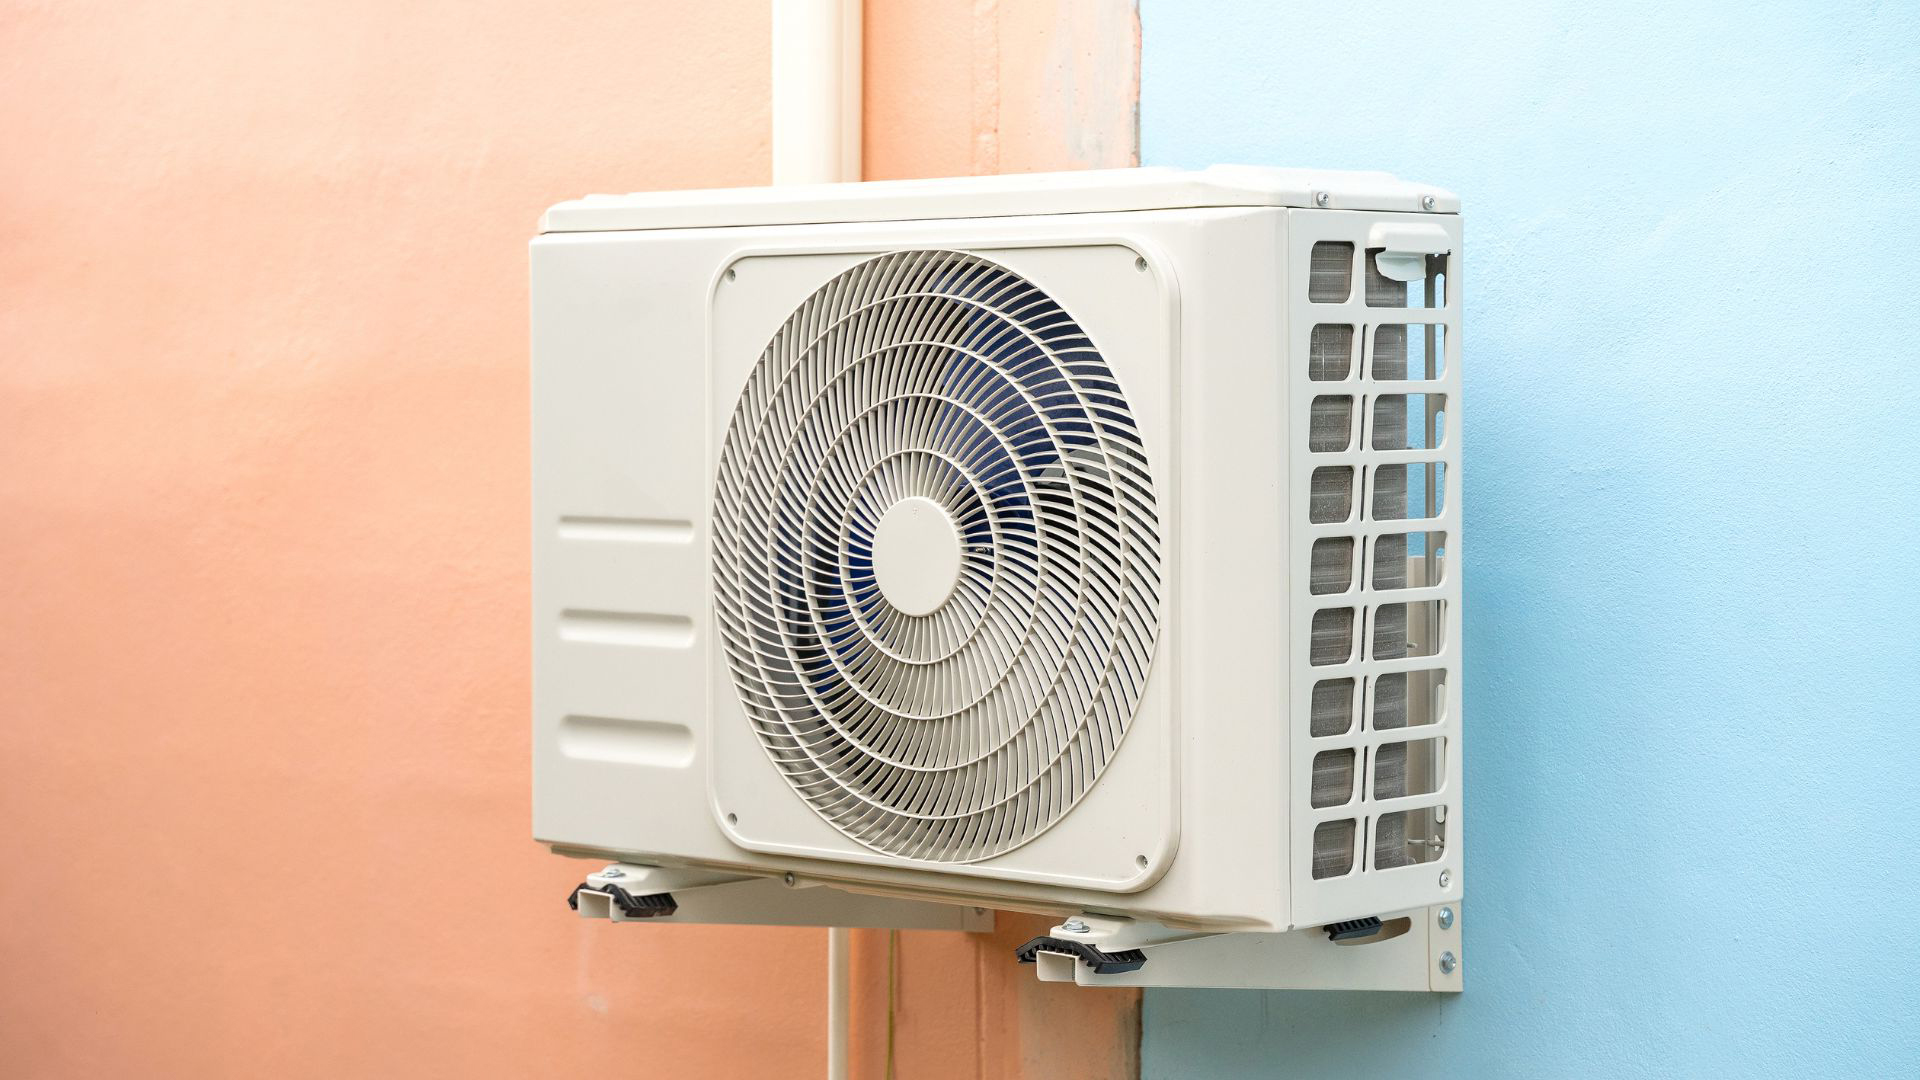 Entretien du climatiseur 5 points de contrôle pour augmenter son efficacité